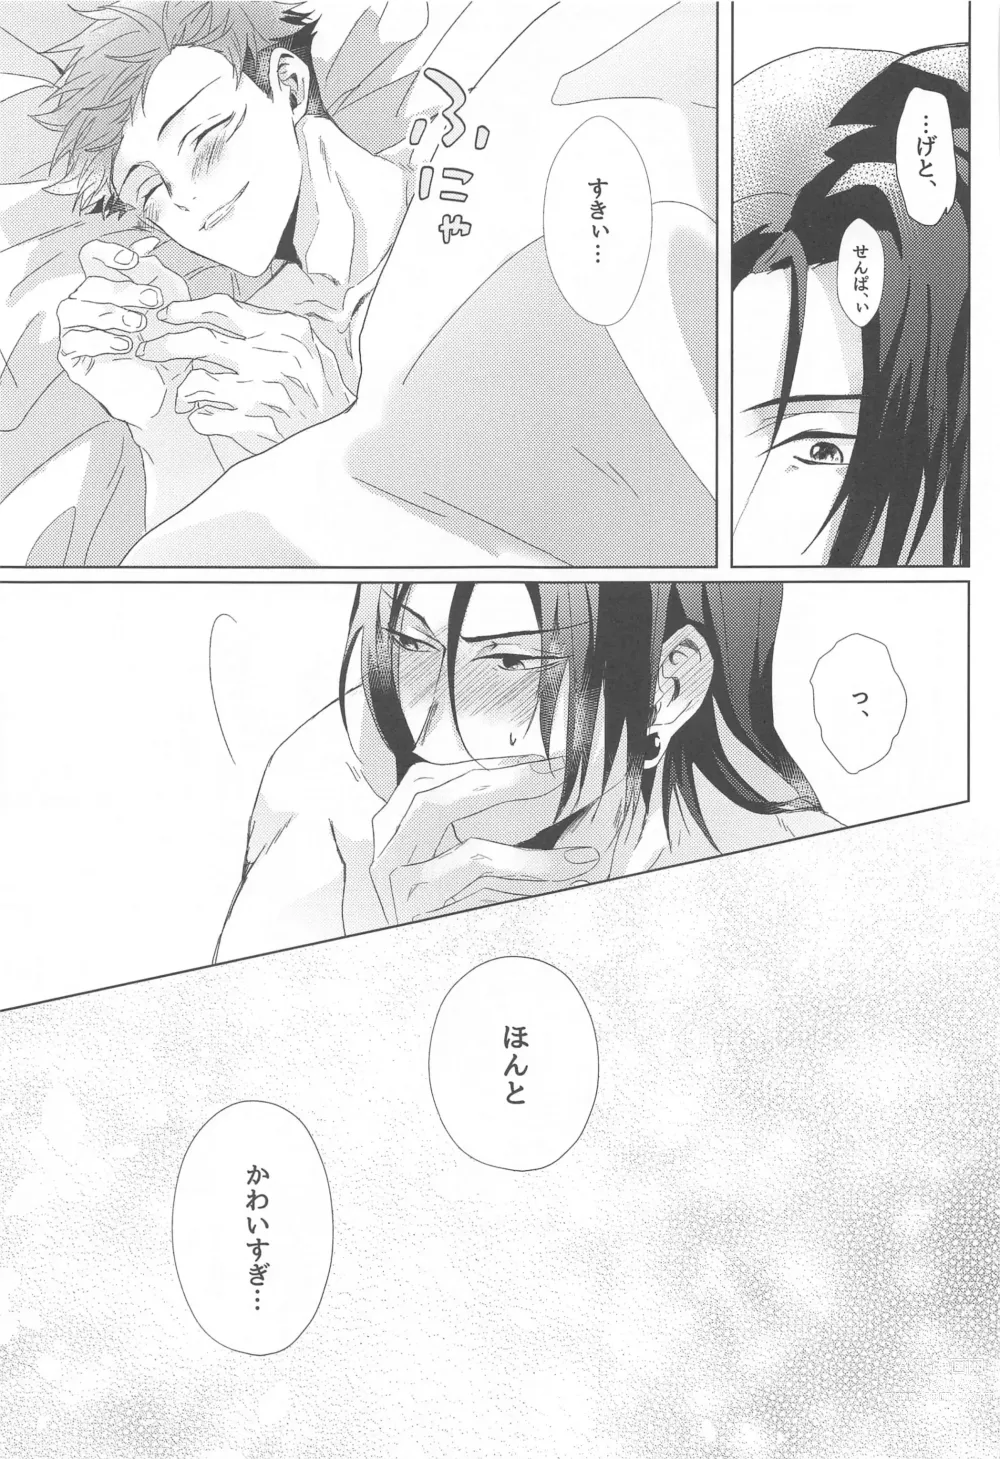 Page 48 of doujinshi Senpai, Anone.